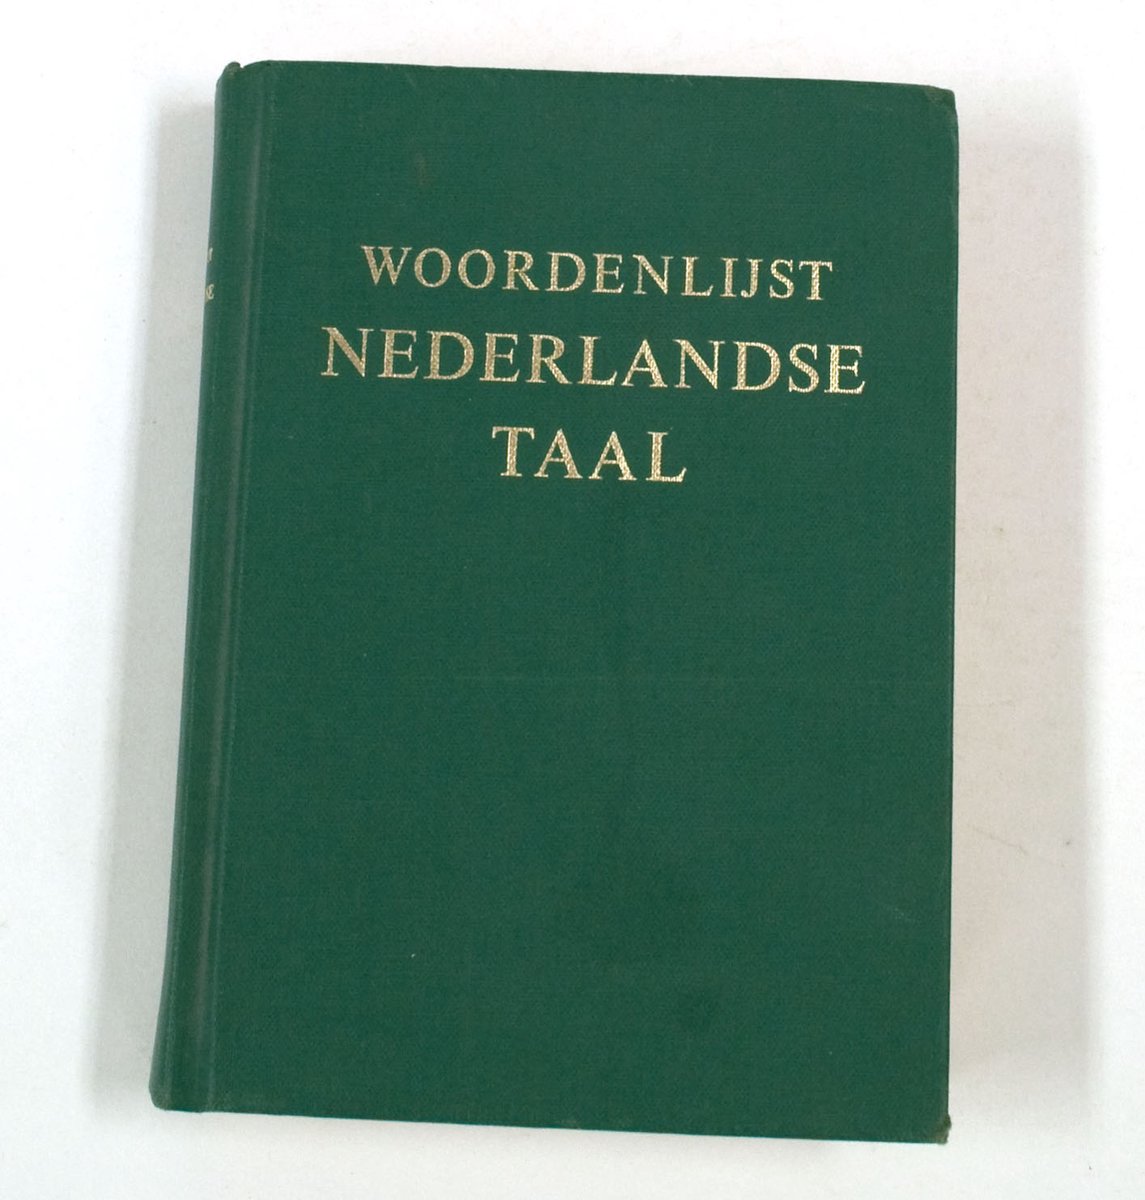 WOORDENLIJST NEDERLANDSE TAAL (1990)